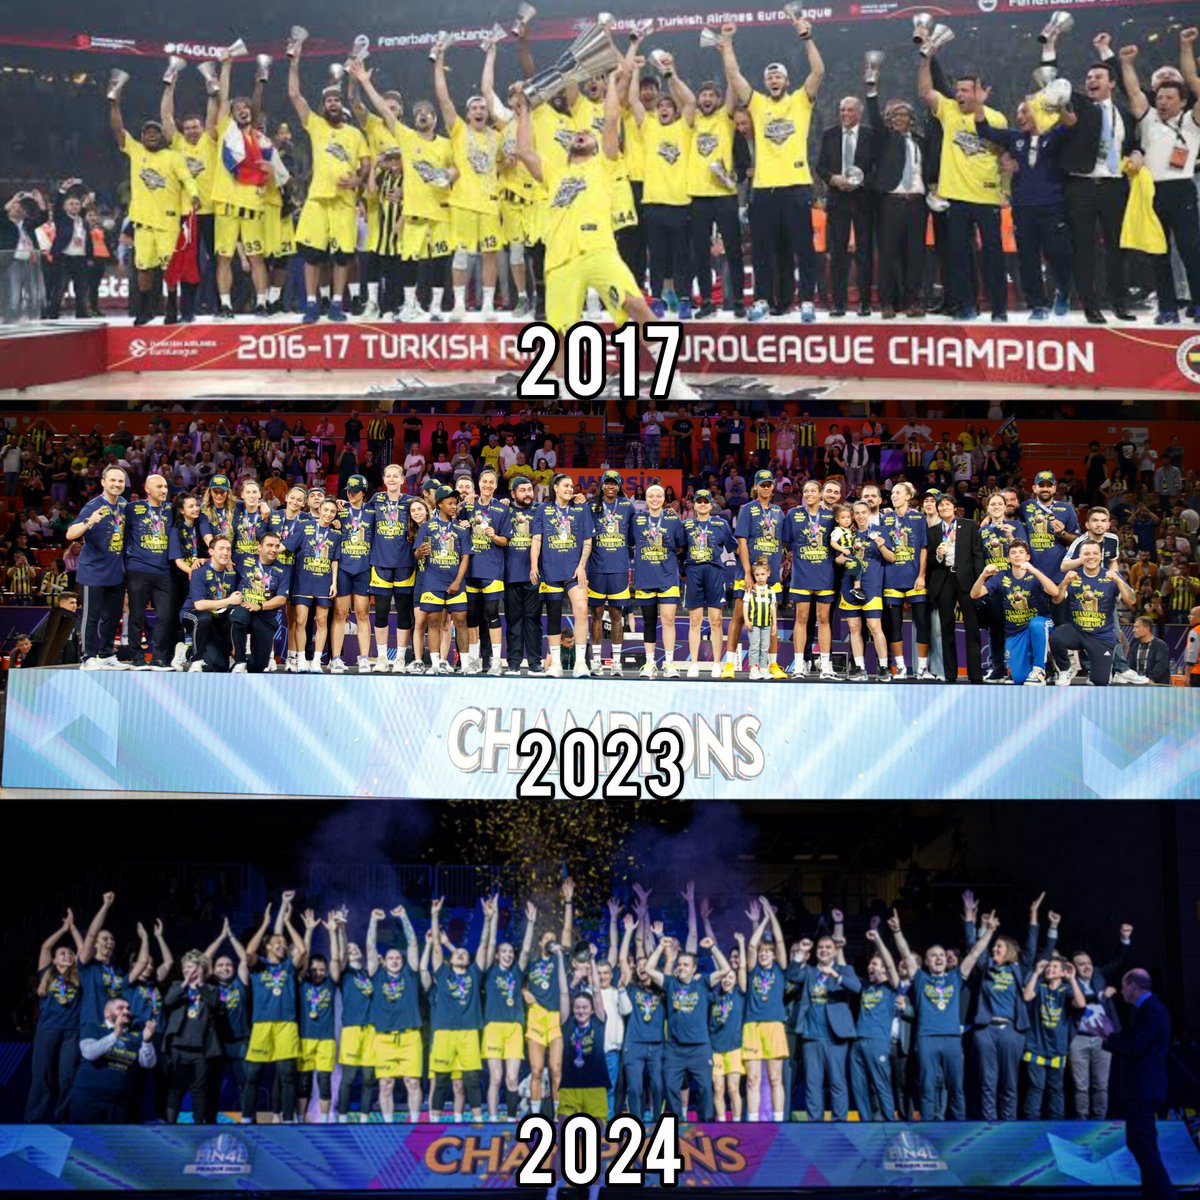 Tarihte hem kadın hem erkeklerde EuroLeague şampiyonu olan tek kulüp Fenerbahçe